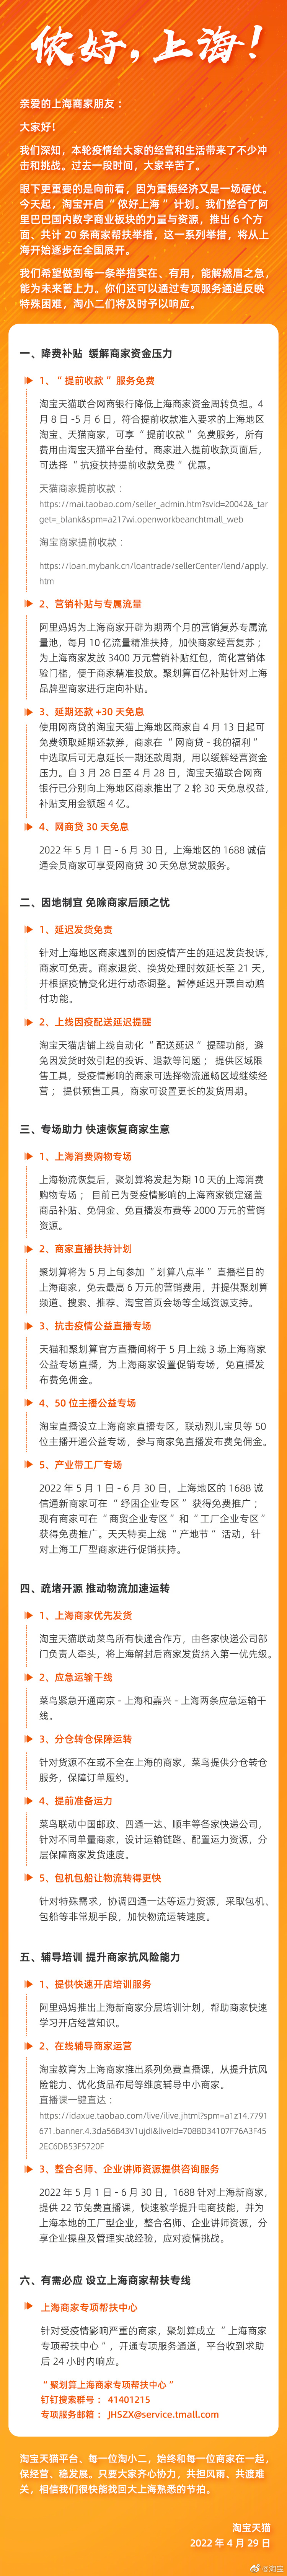 淘宝天猫发布针对上海商家的扶持举措：商家可提前收款，发起 10 天购物消费节